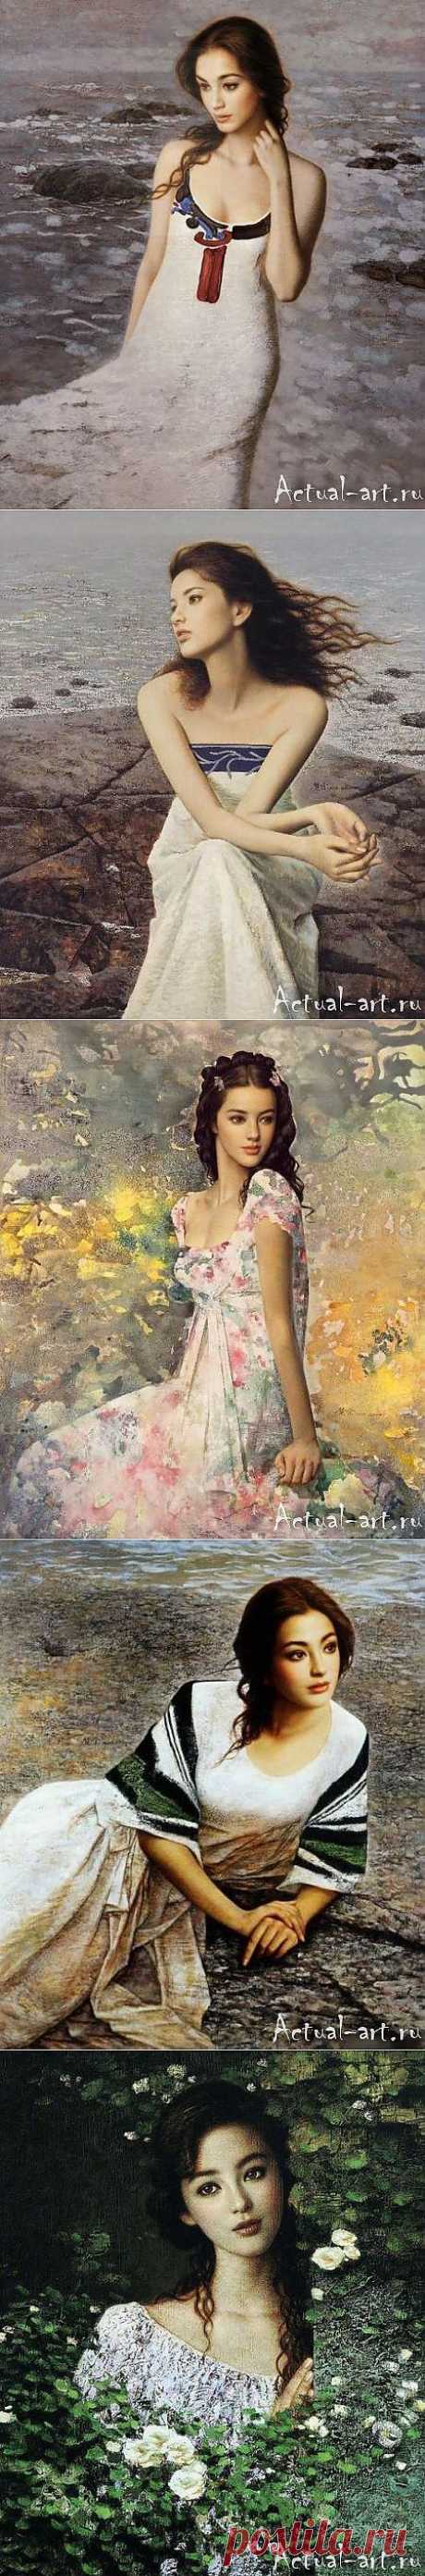 Китайская живопись, картины прекрасных девушек Xie Chuyu | Actual-art.ru